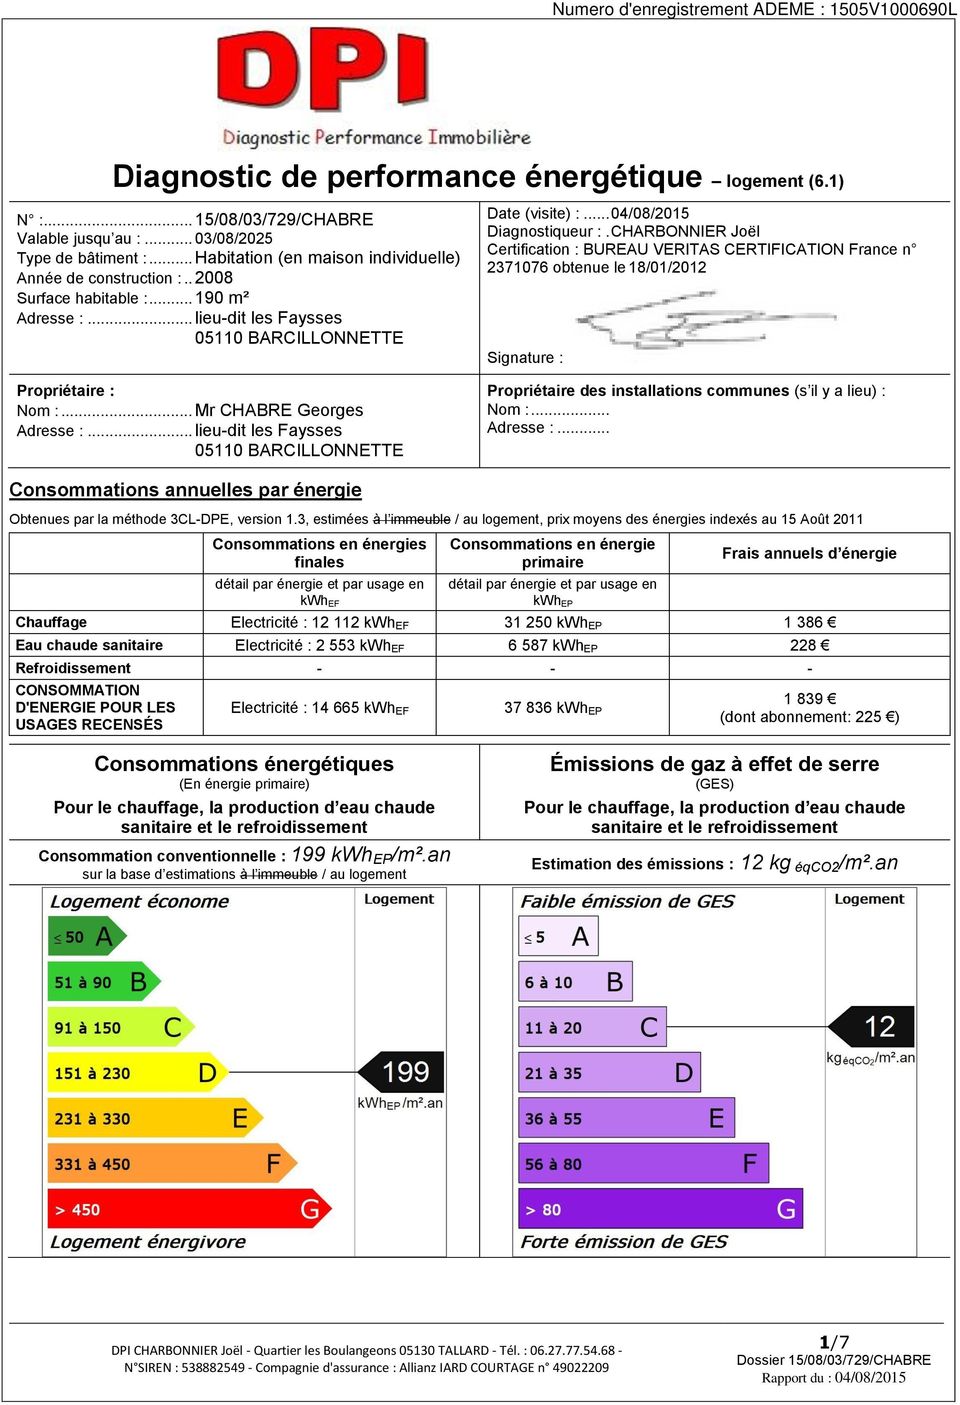 CHARBONNIER Joël Certification : BUREAU VERITAS CERTIFICATION France n 2371076 obtenue le 18/01/2012 Signature : Propriétaire : Nom :... Mr CHABRE Georges Adresse :.